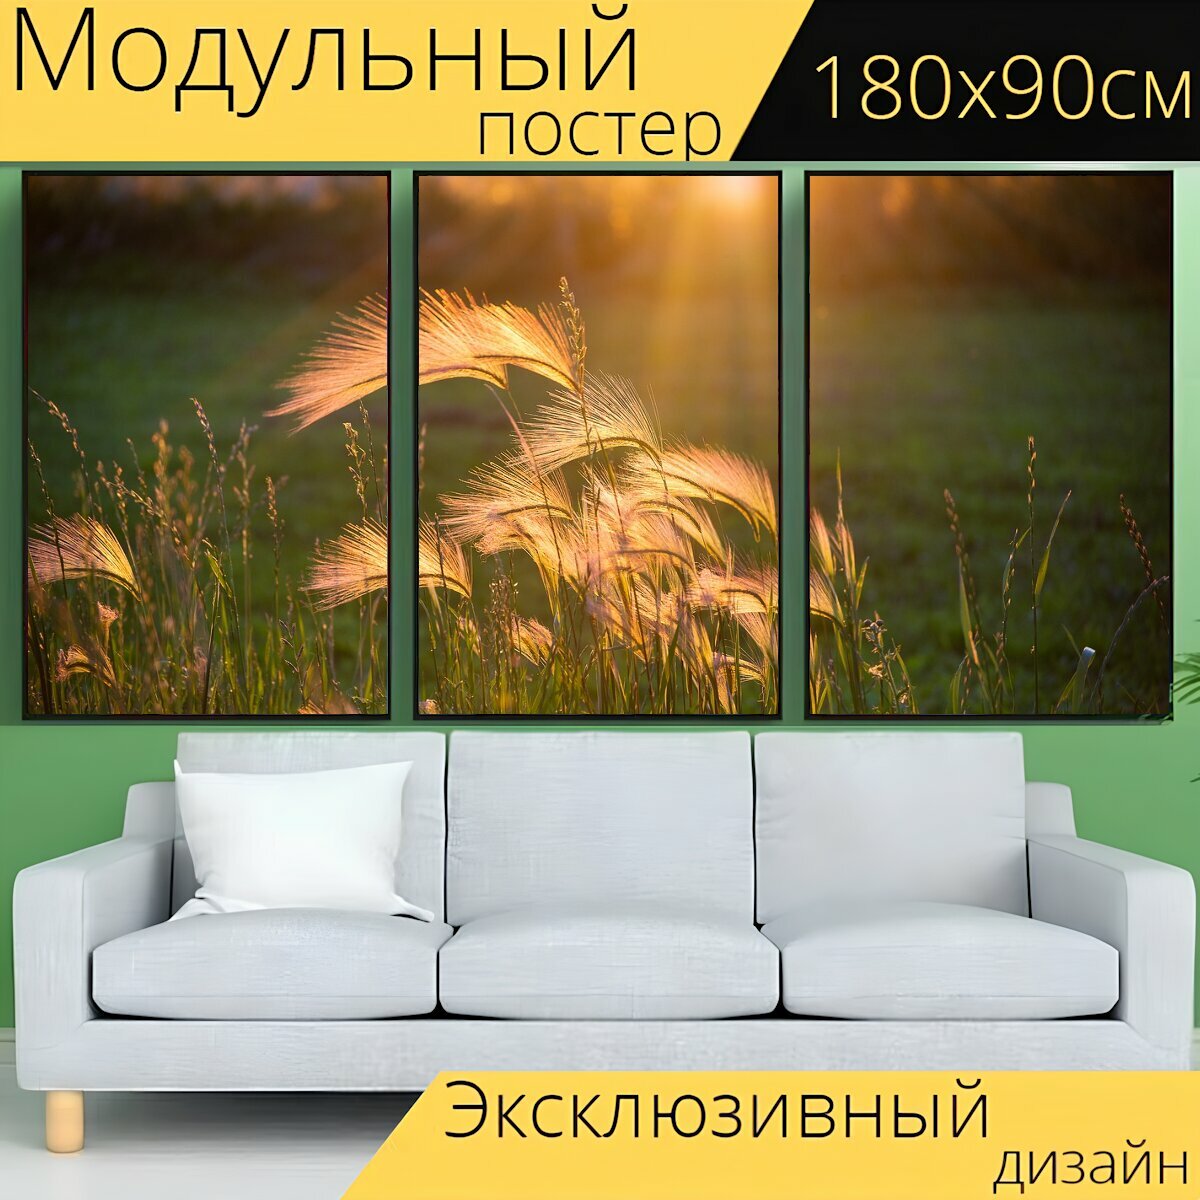 Модульный постер "Заход солнца, сорняки, теплый" 180 x 90 см. для интерьера